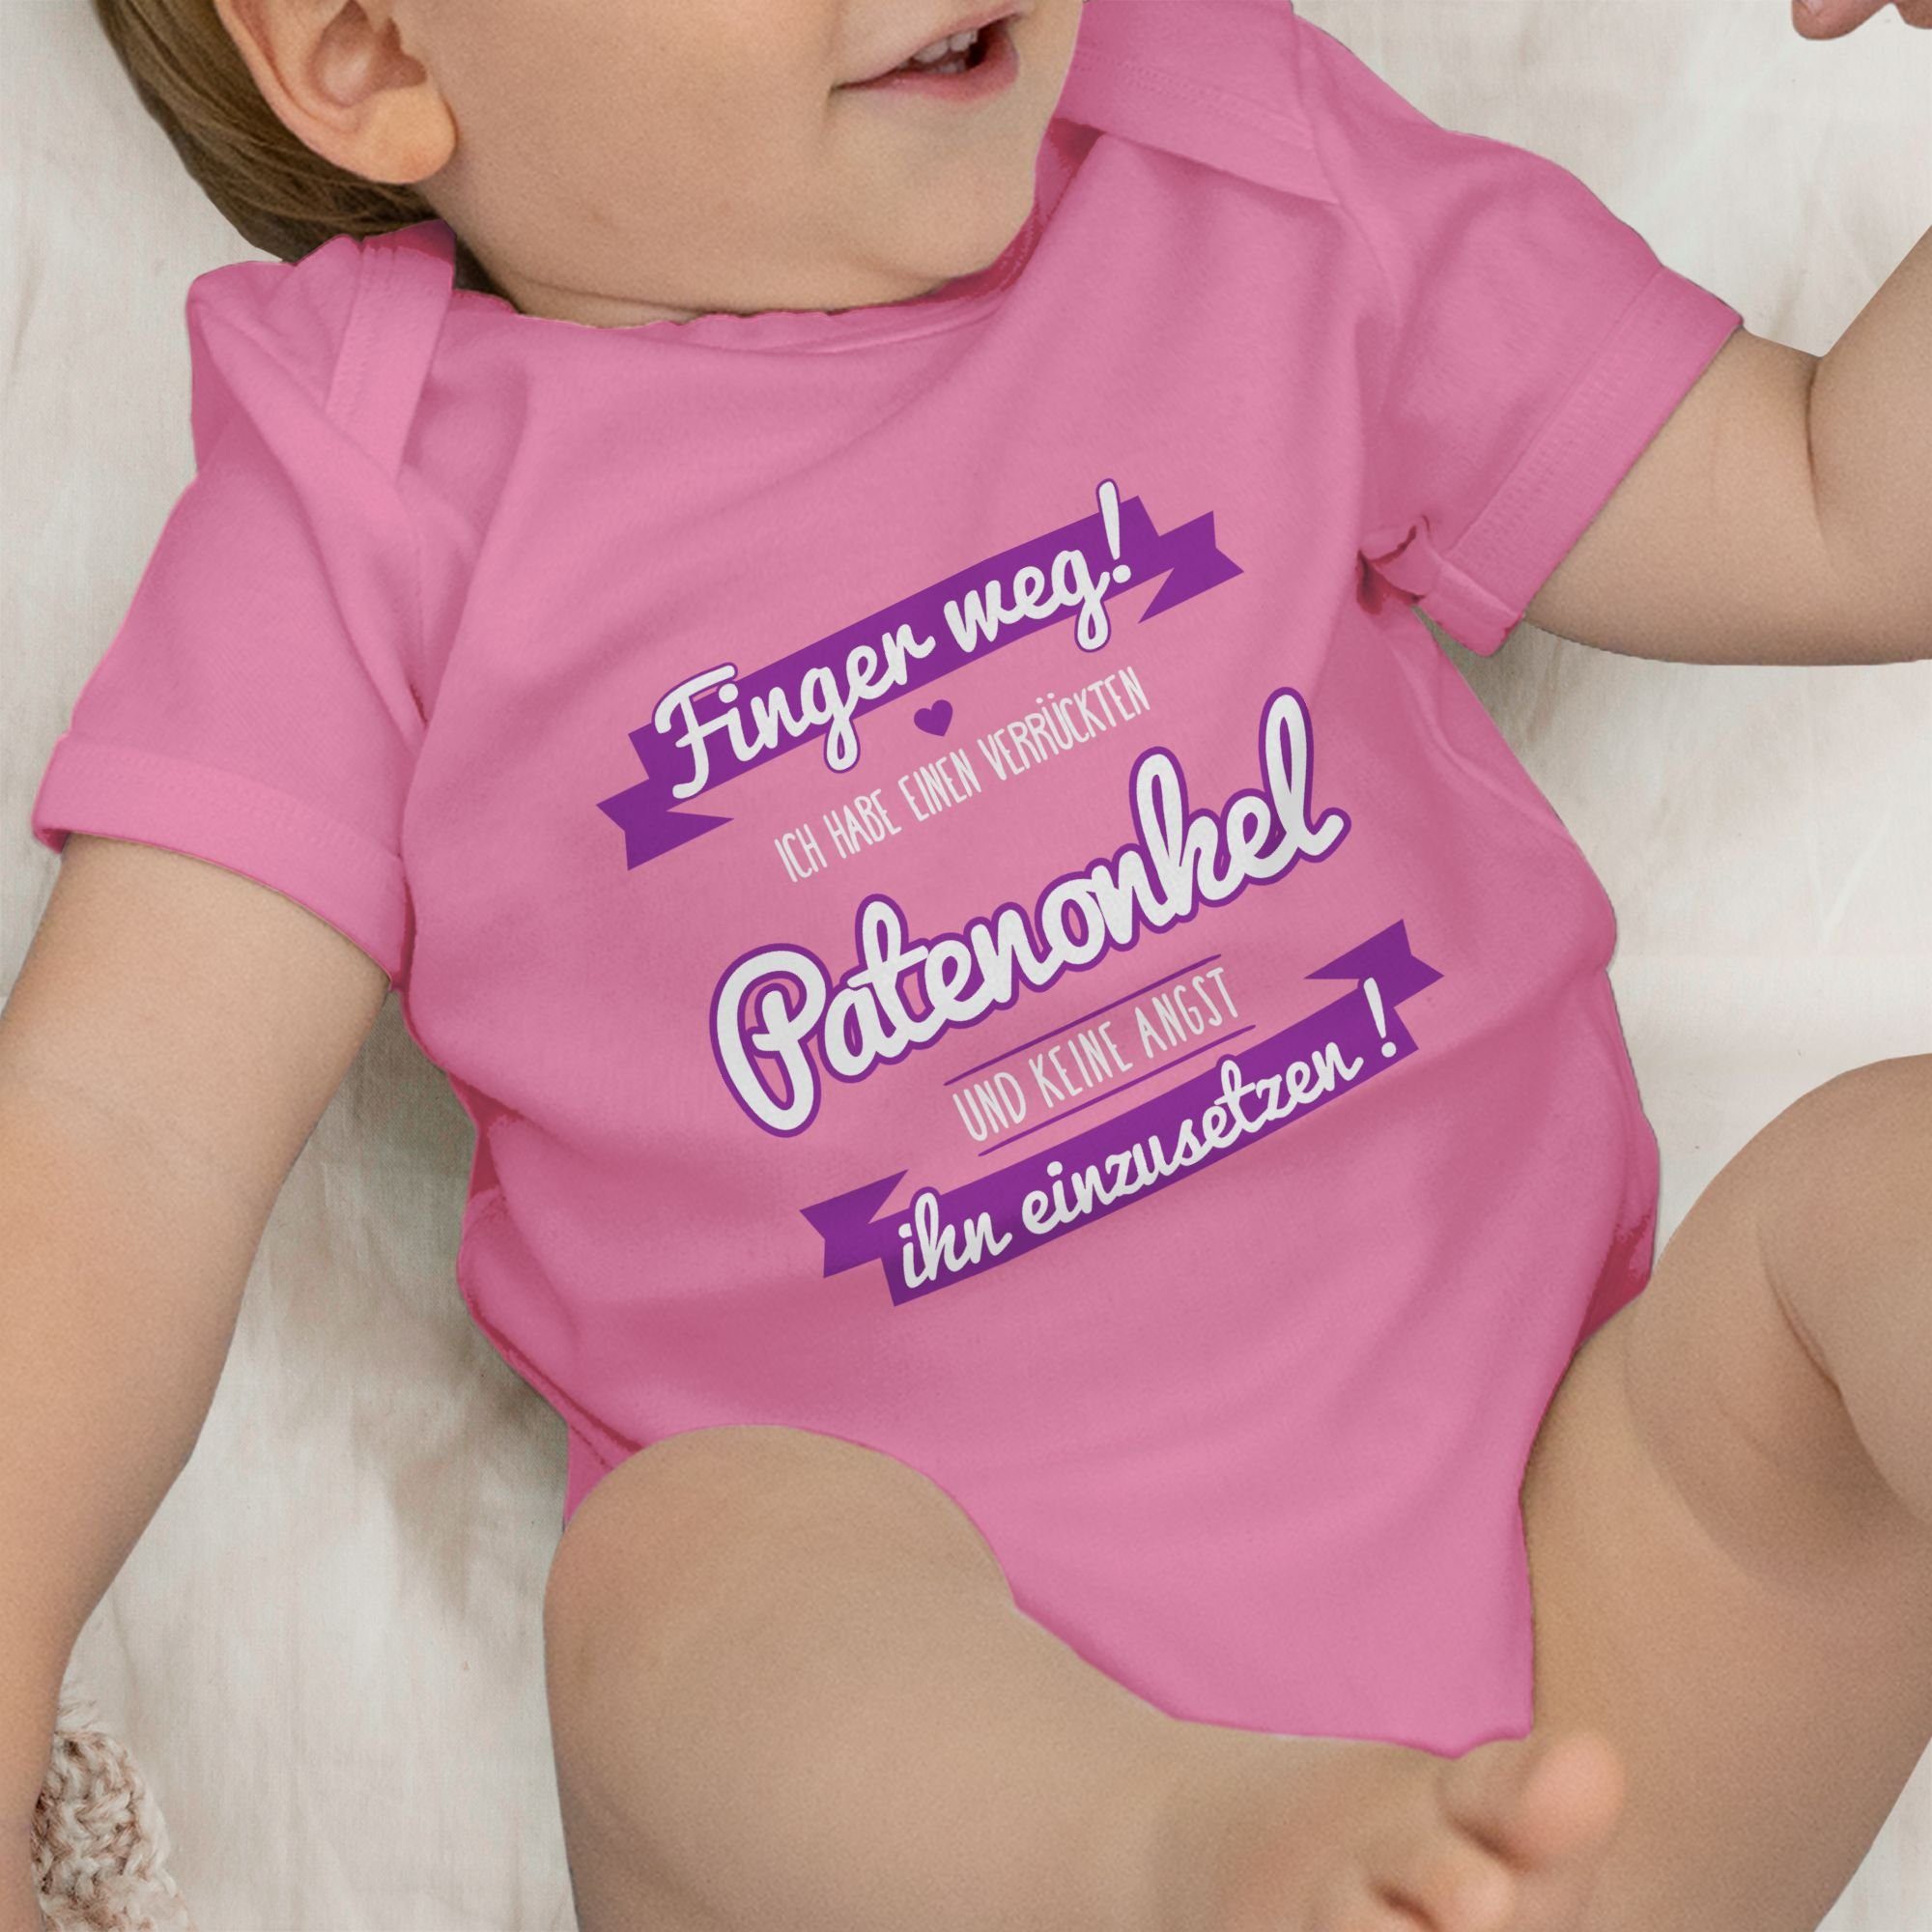 Ich habe 1 Baby Patenonkel lila Patenonkel einen verrückten Shirtbody Shirtracer Pink